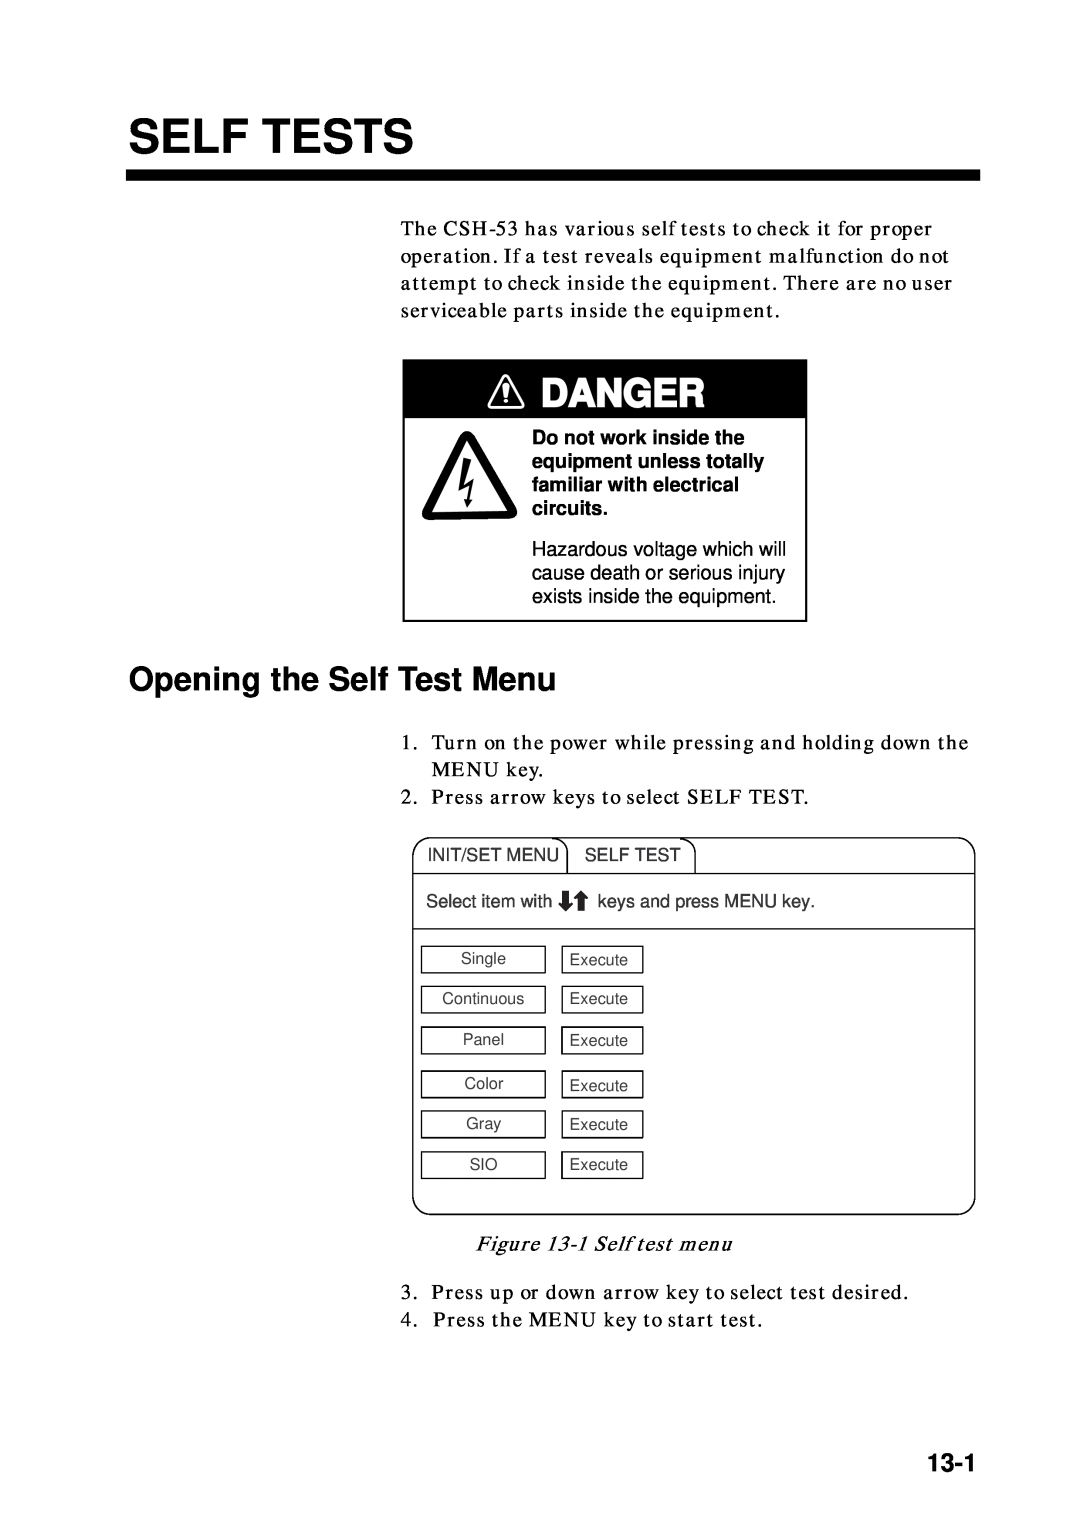 Furuno CSH-53 manual Self Tests, Danger, Opening the Self Test Menu, 13-1, 1 Self test menu 